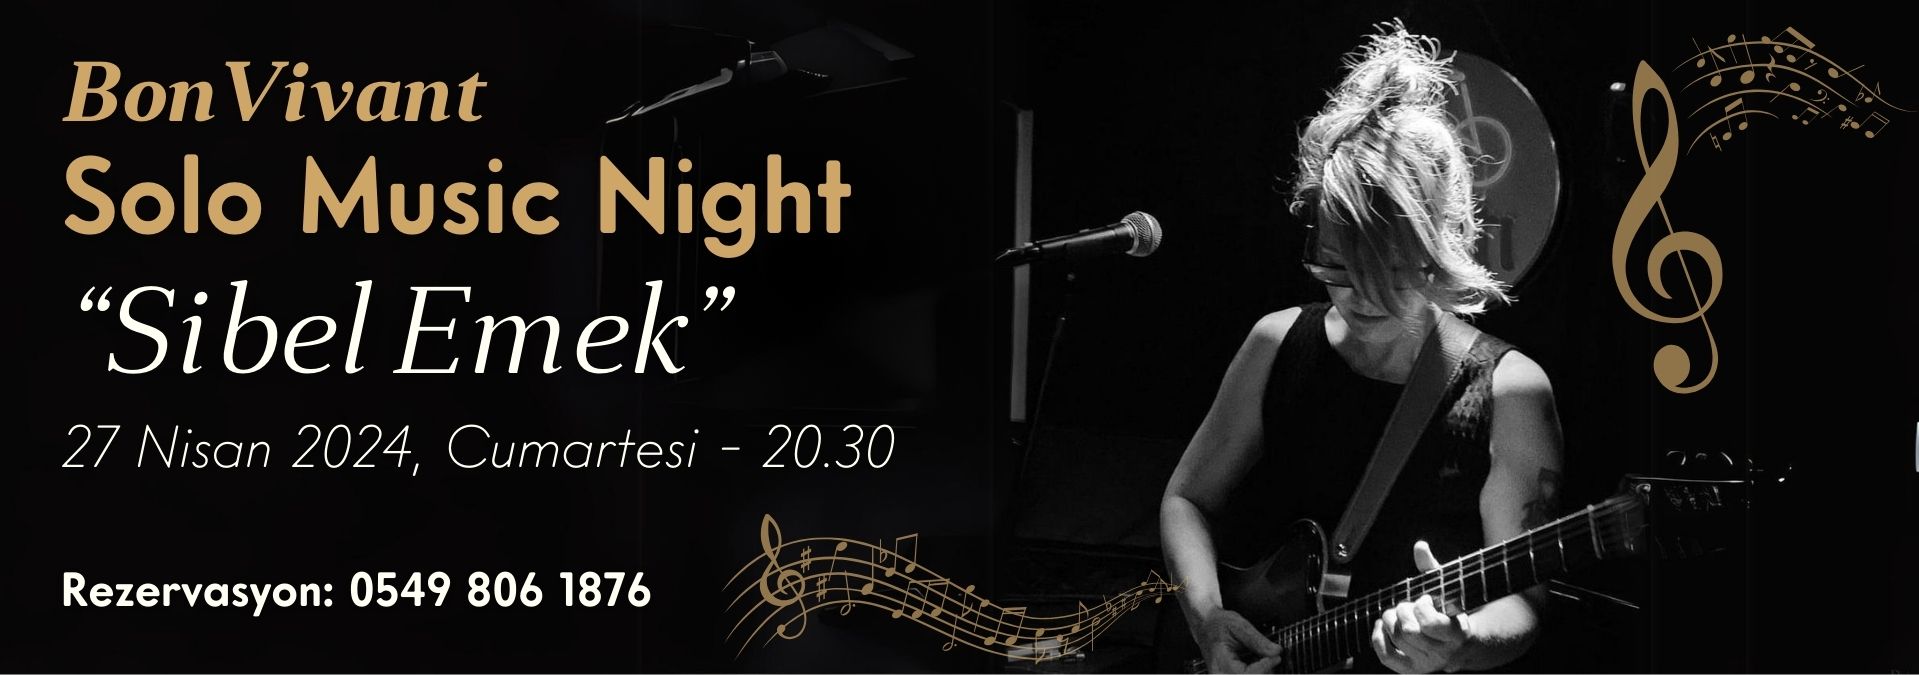 BonVivant Solo Music Night: Sibel Emek